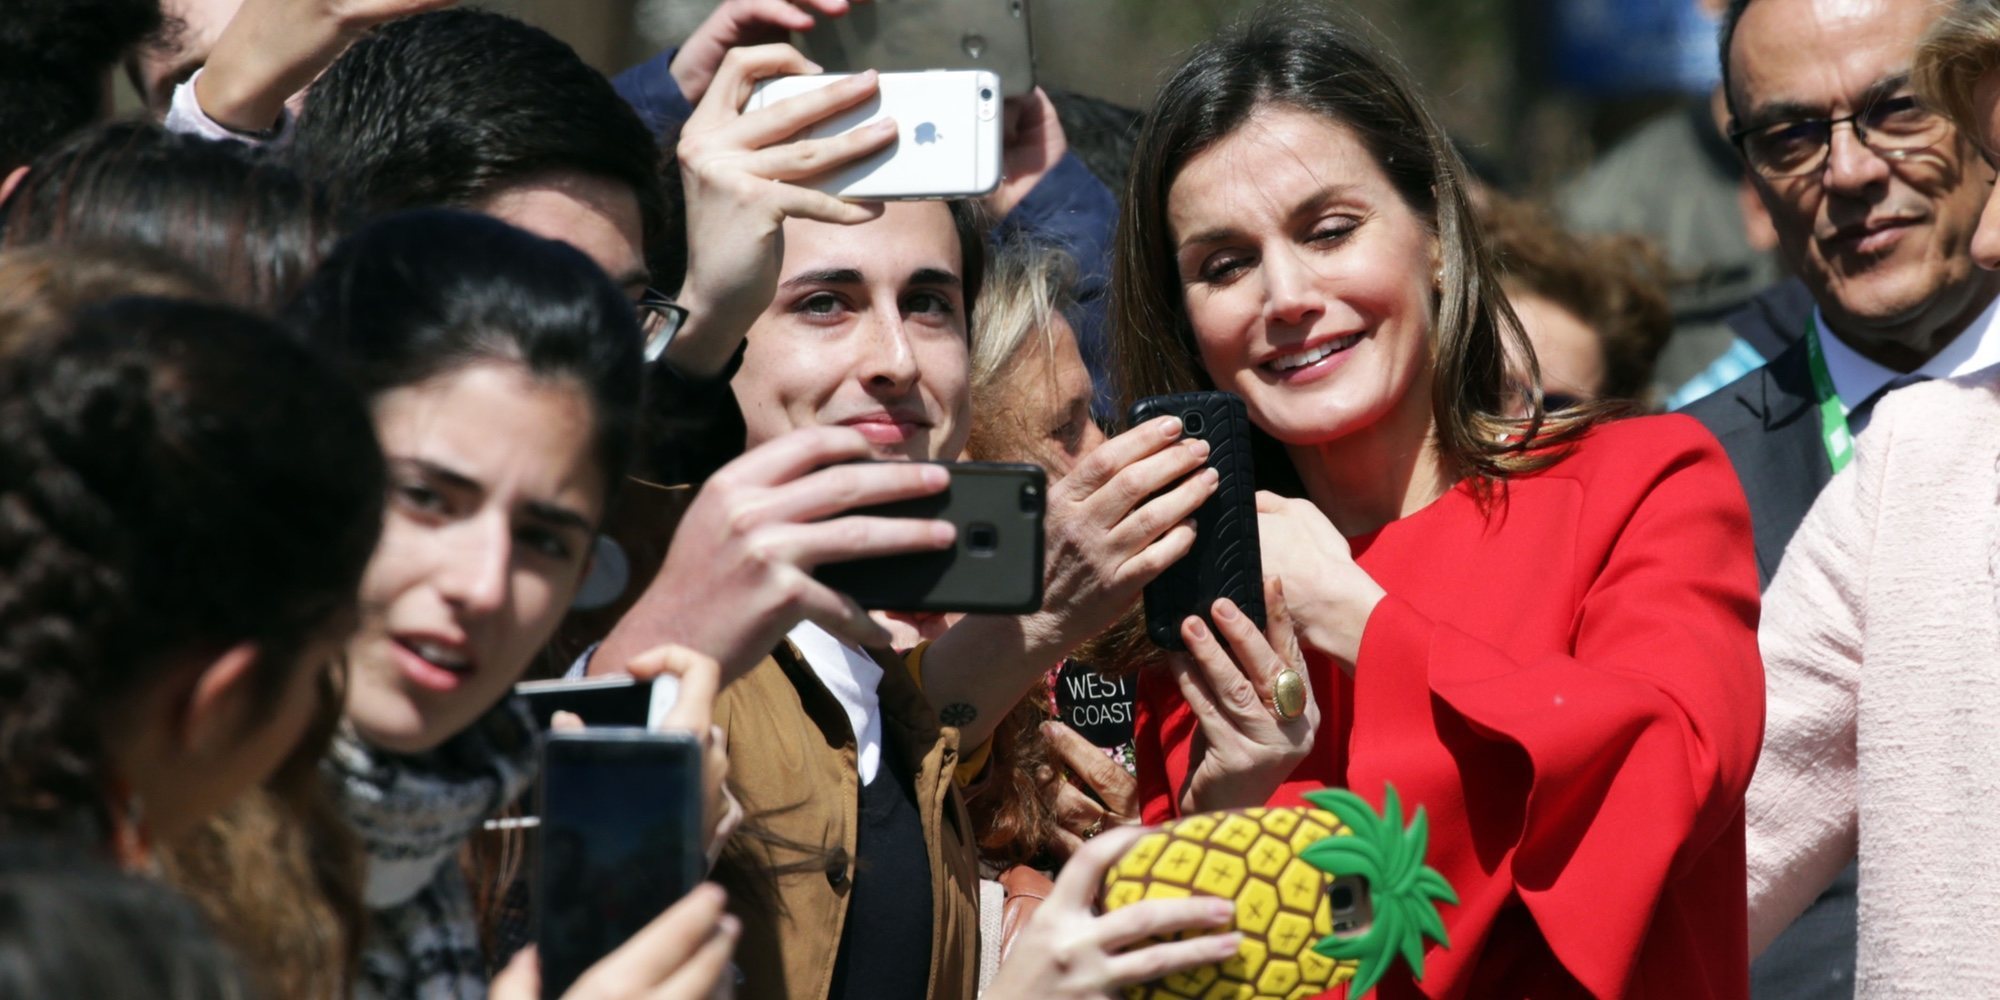 La Reina Letizia, más sonriente que nunca: selfies, saludos y autógrafos para olvidar el escándalo